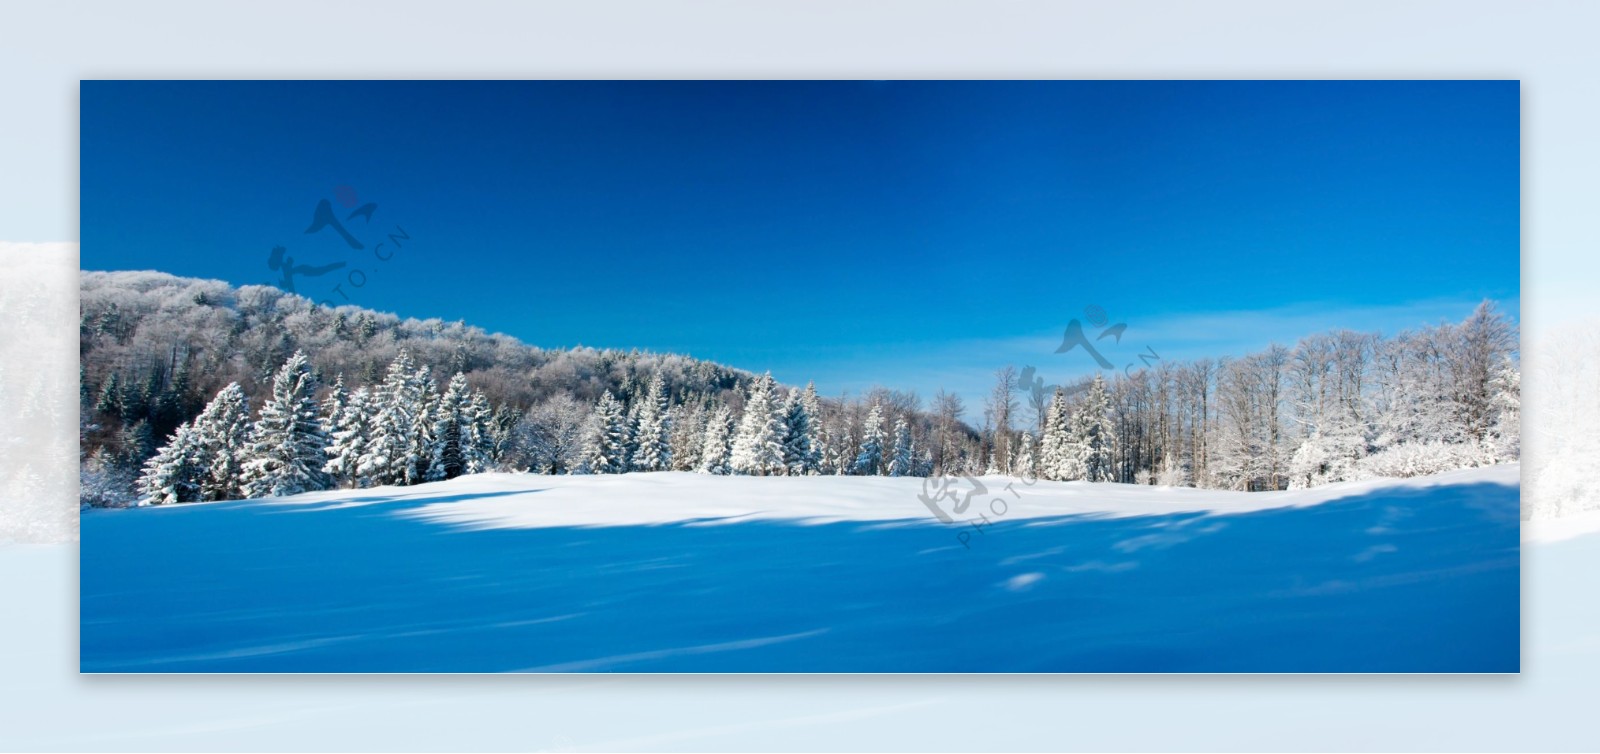 冬季森林与雪地风景图片